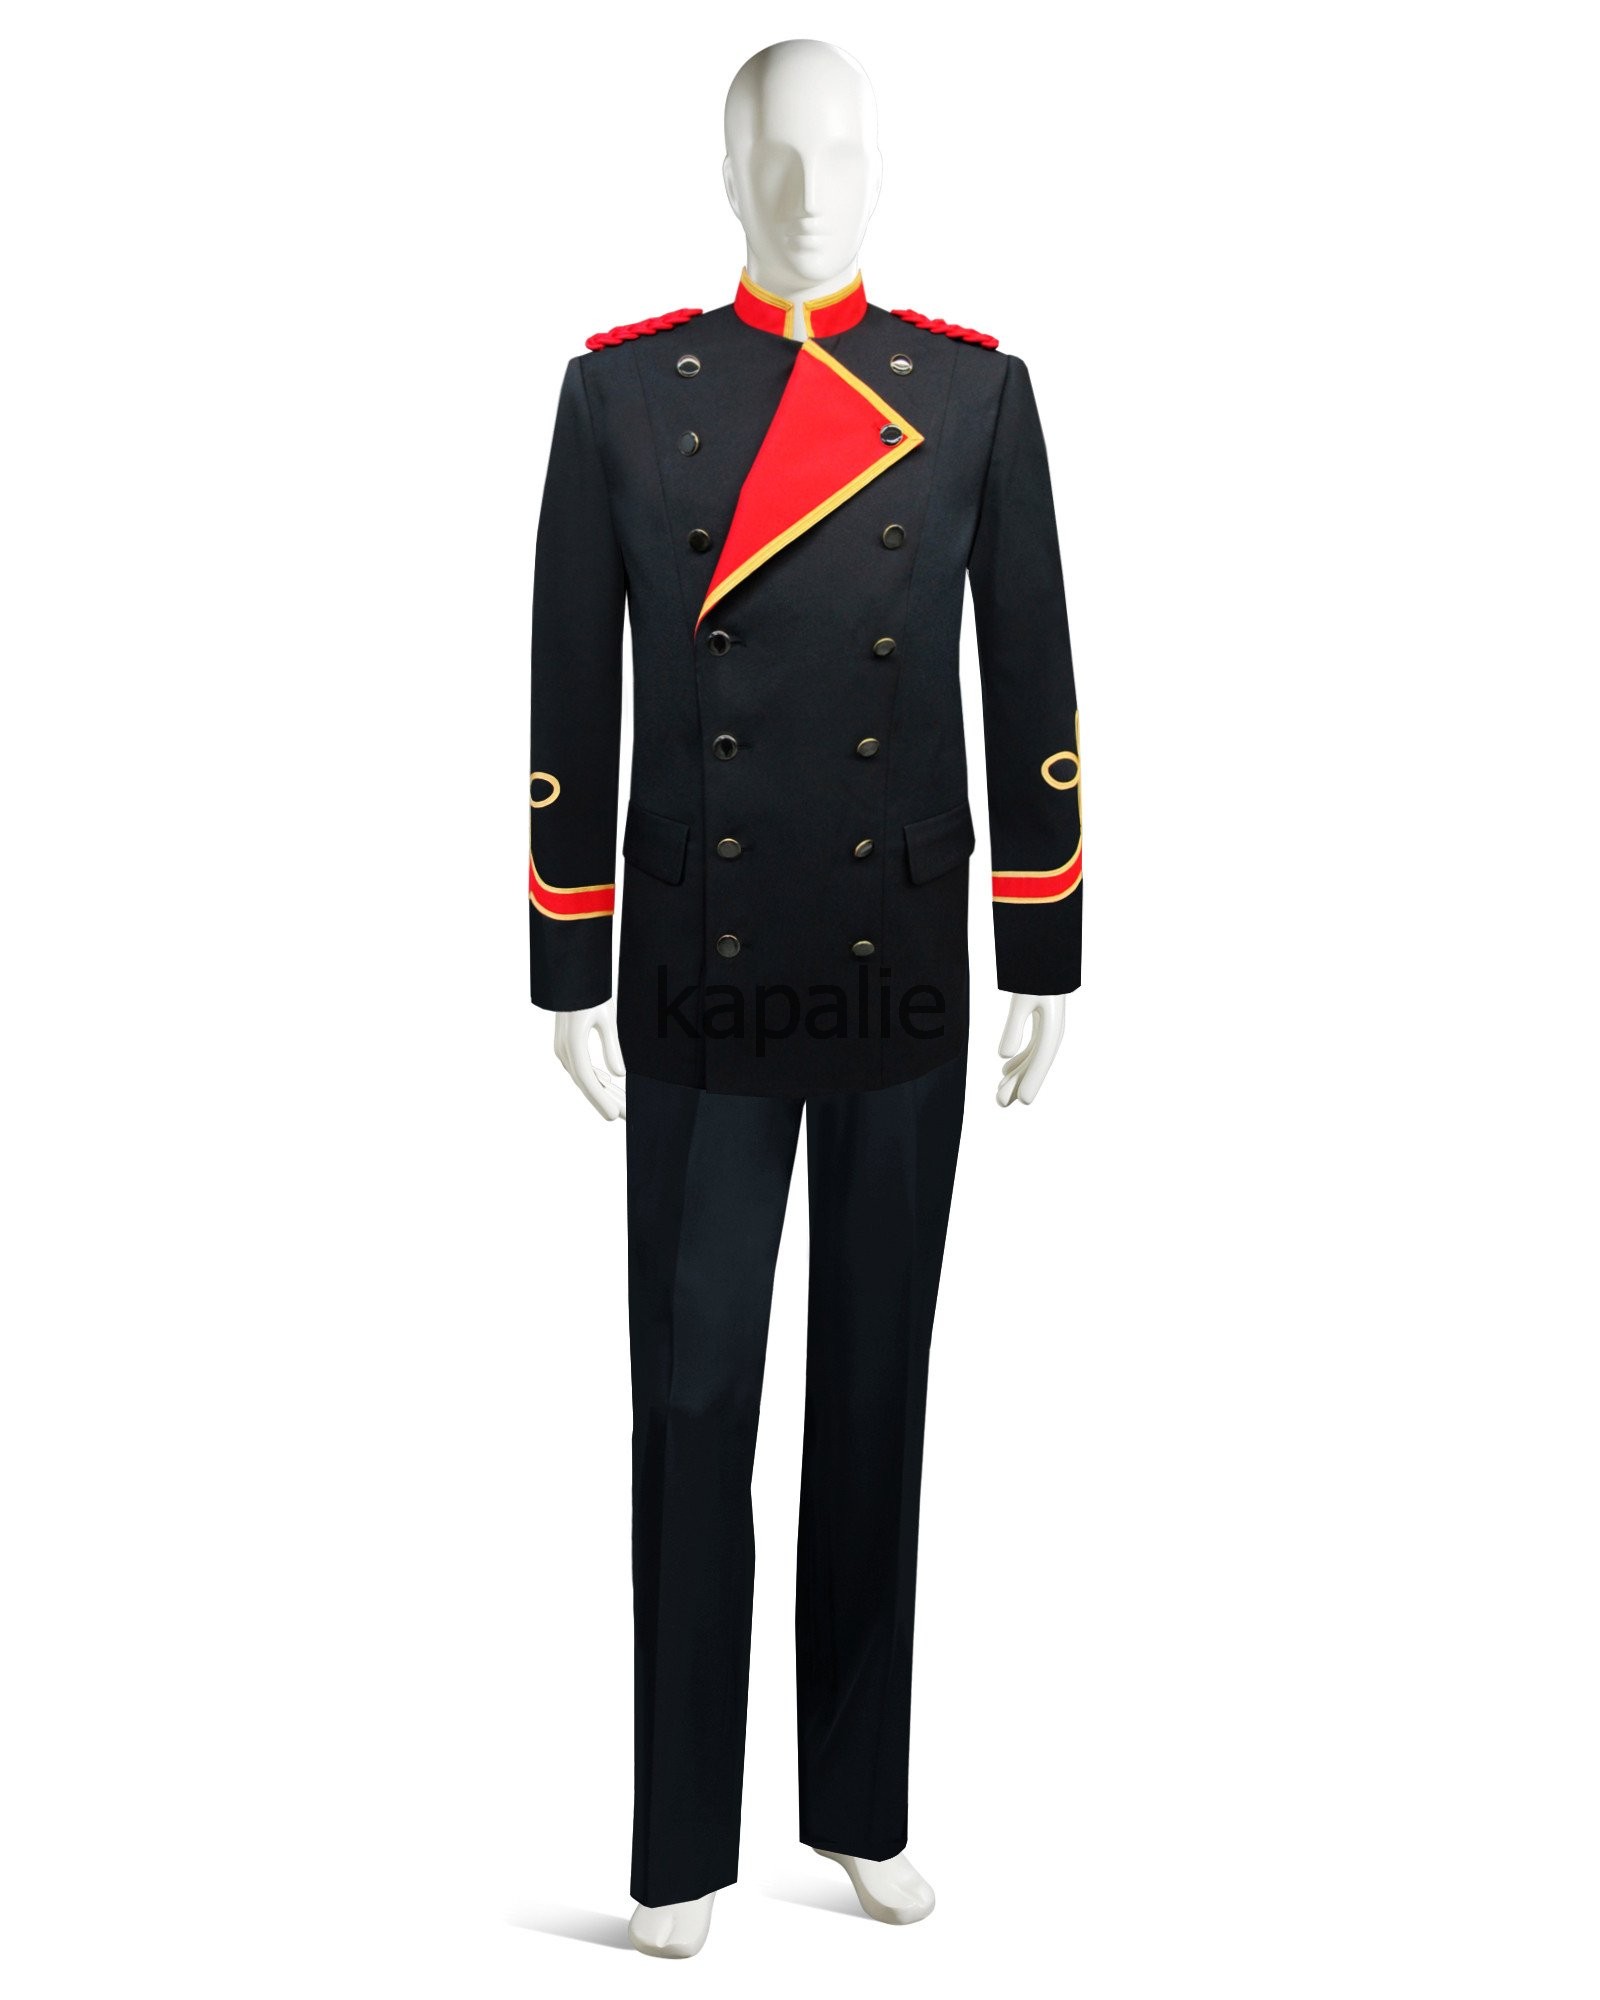 Doorman Uniforms 16